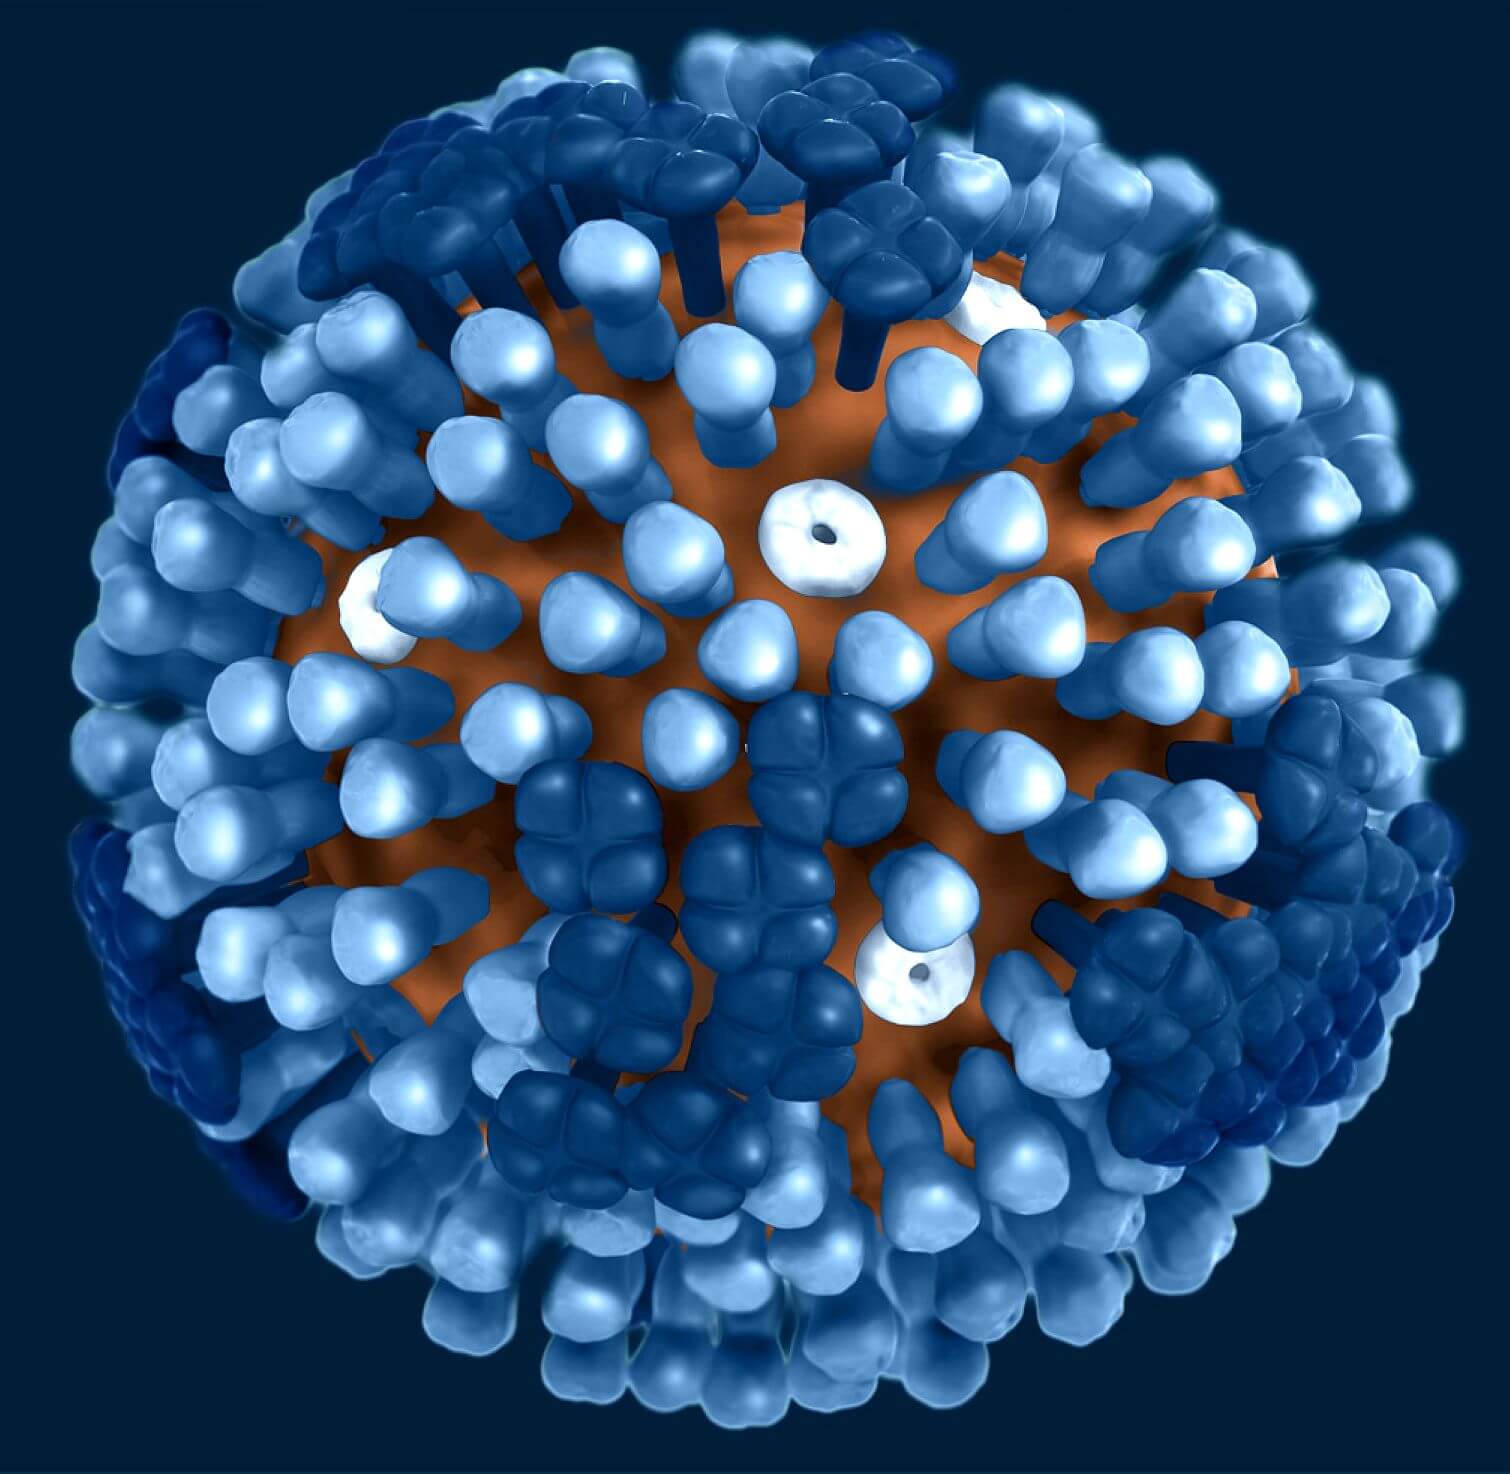 Белок вируса гриппа. Вирион вируса гриппа. Сферические вирусы. Молекула гриппа. Шарообразные вирусы гриппа.